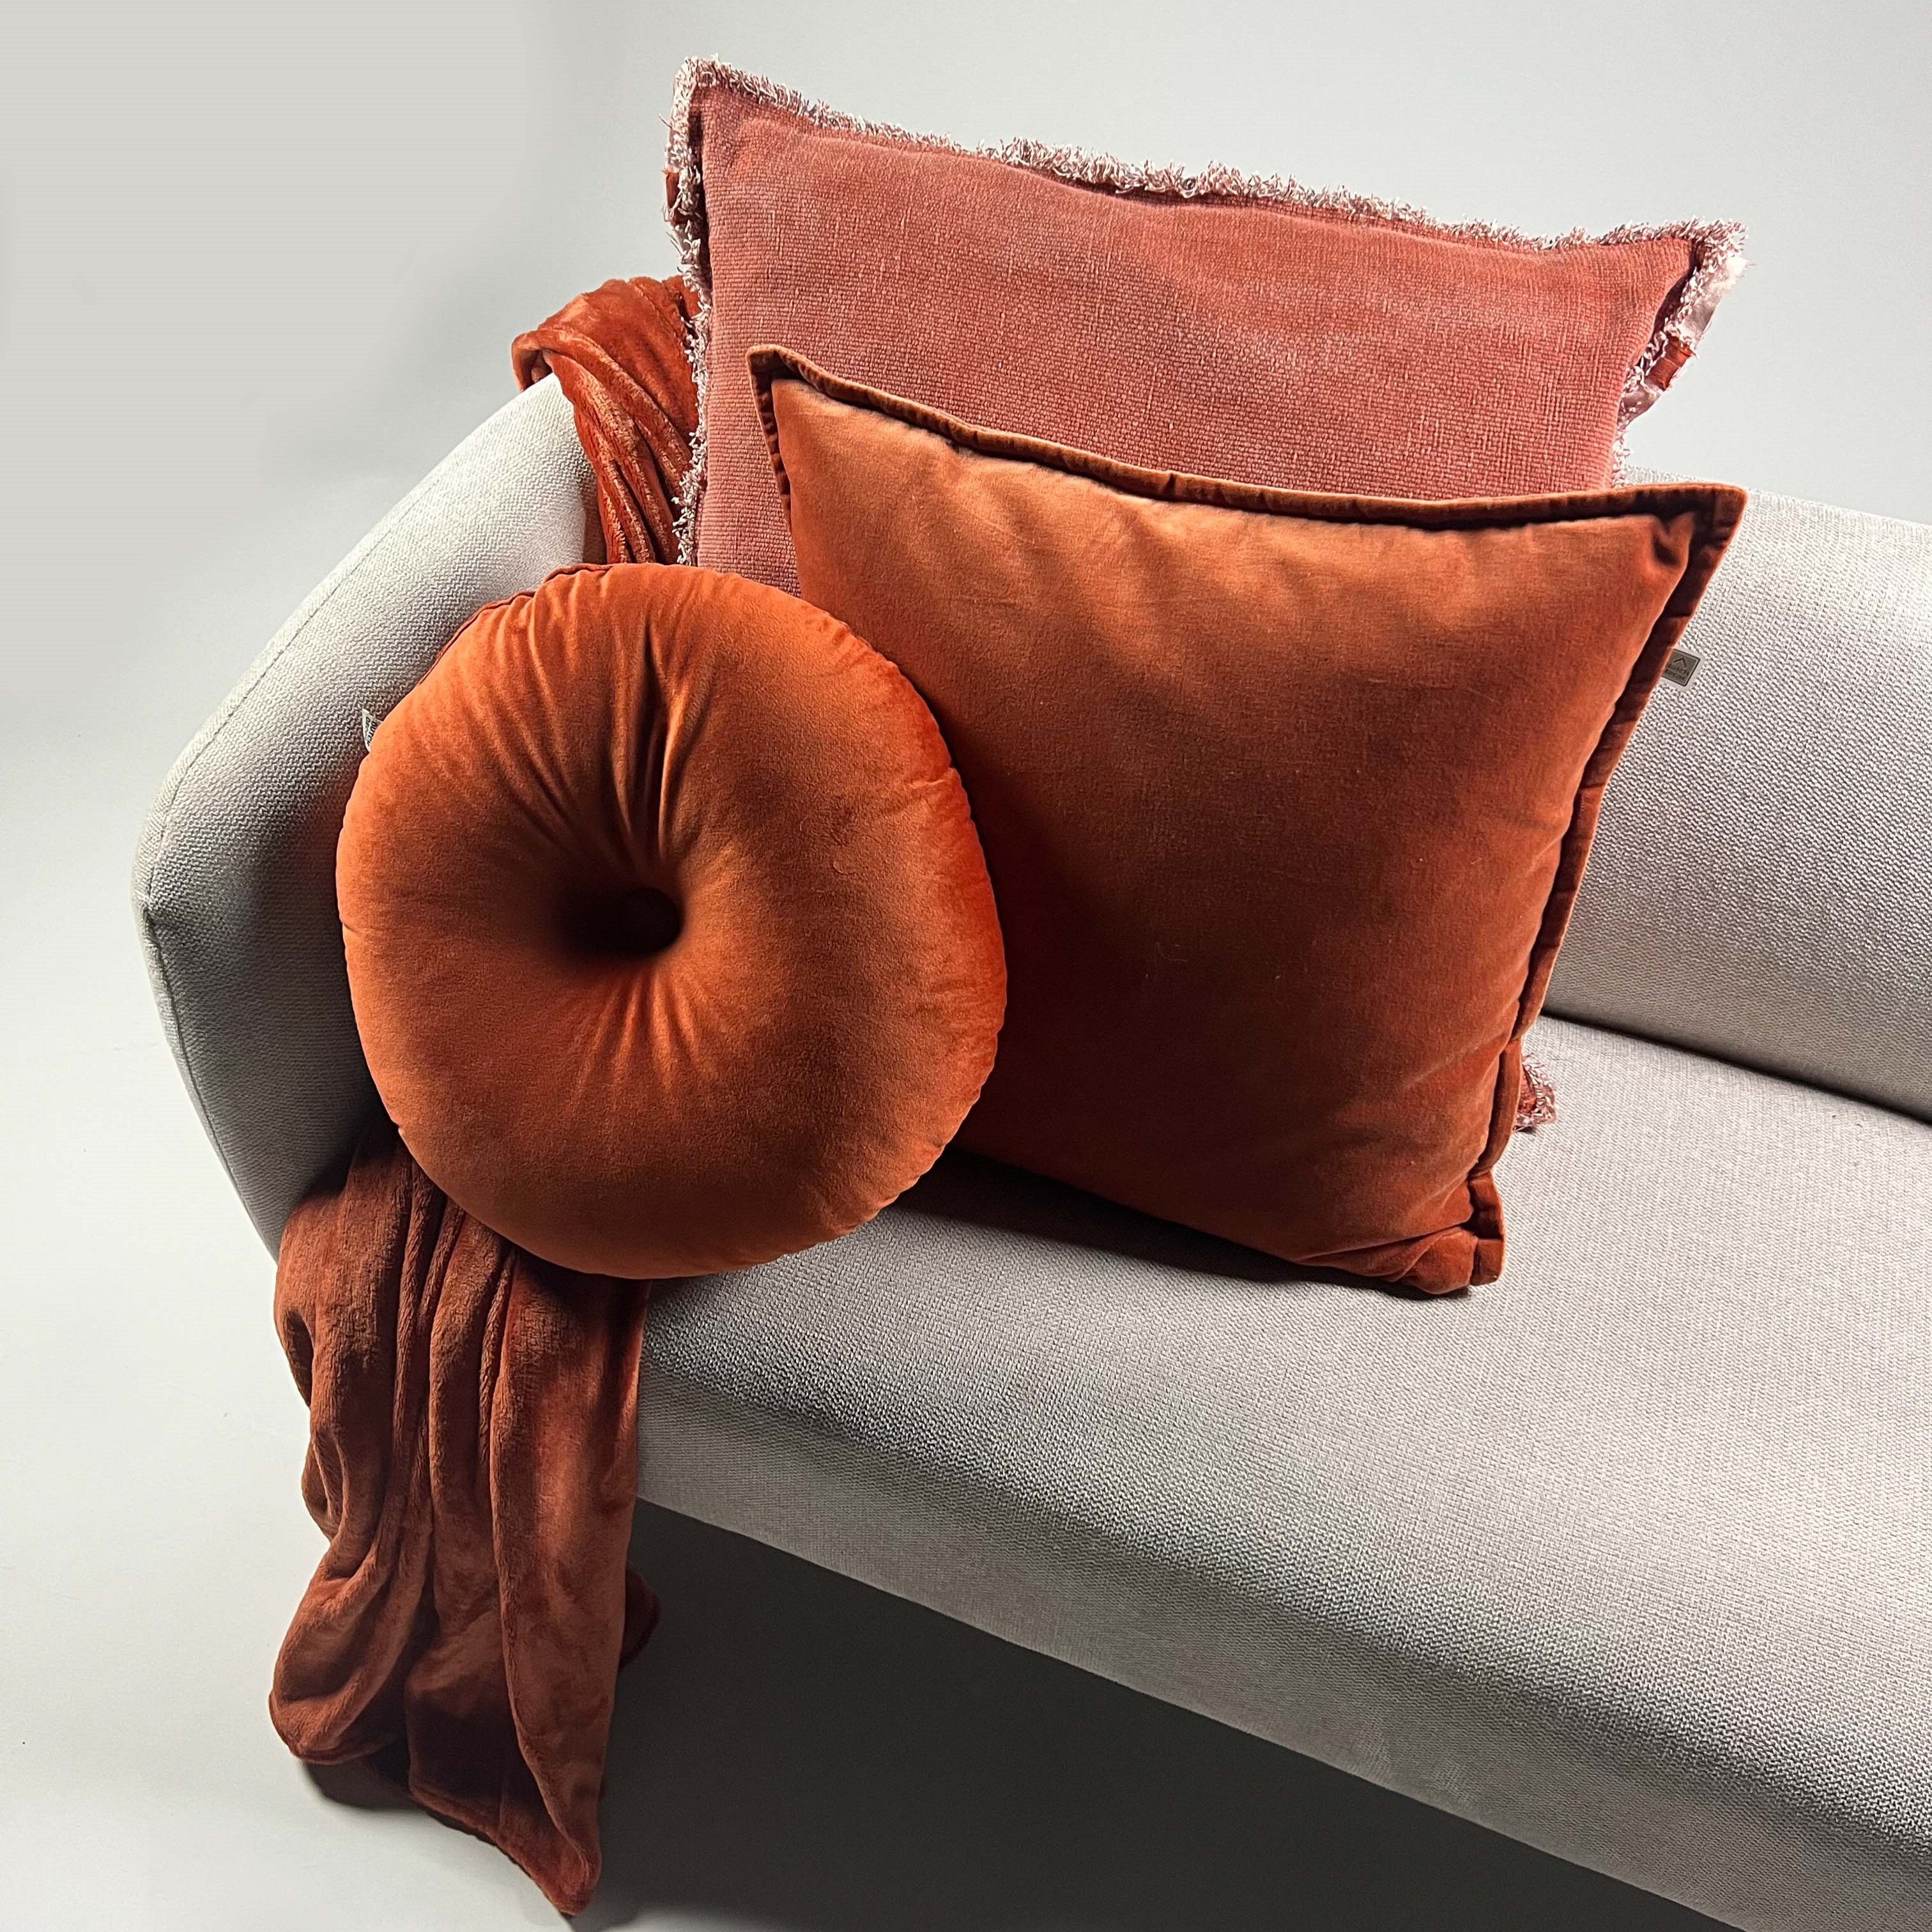 BILLY - Plaid flannel fleece 150x200 cm - Potters Clay - oranje - superzacht